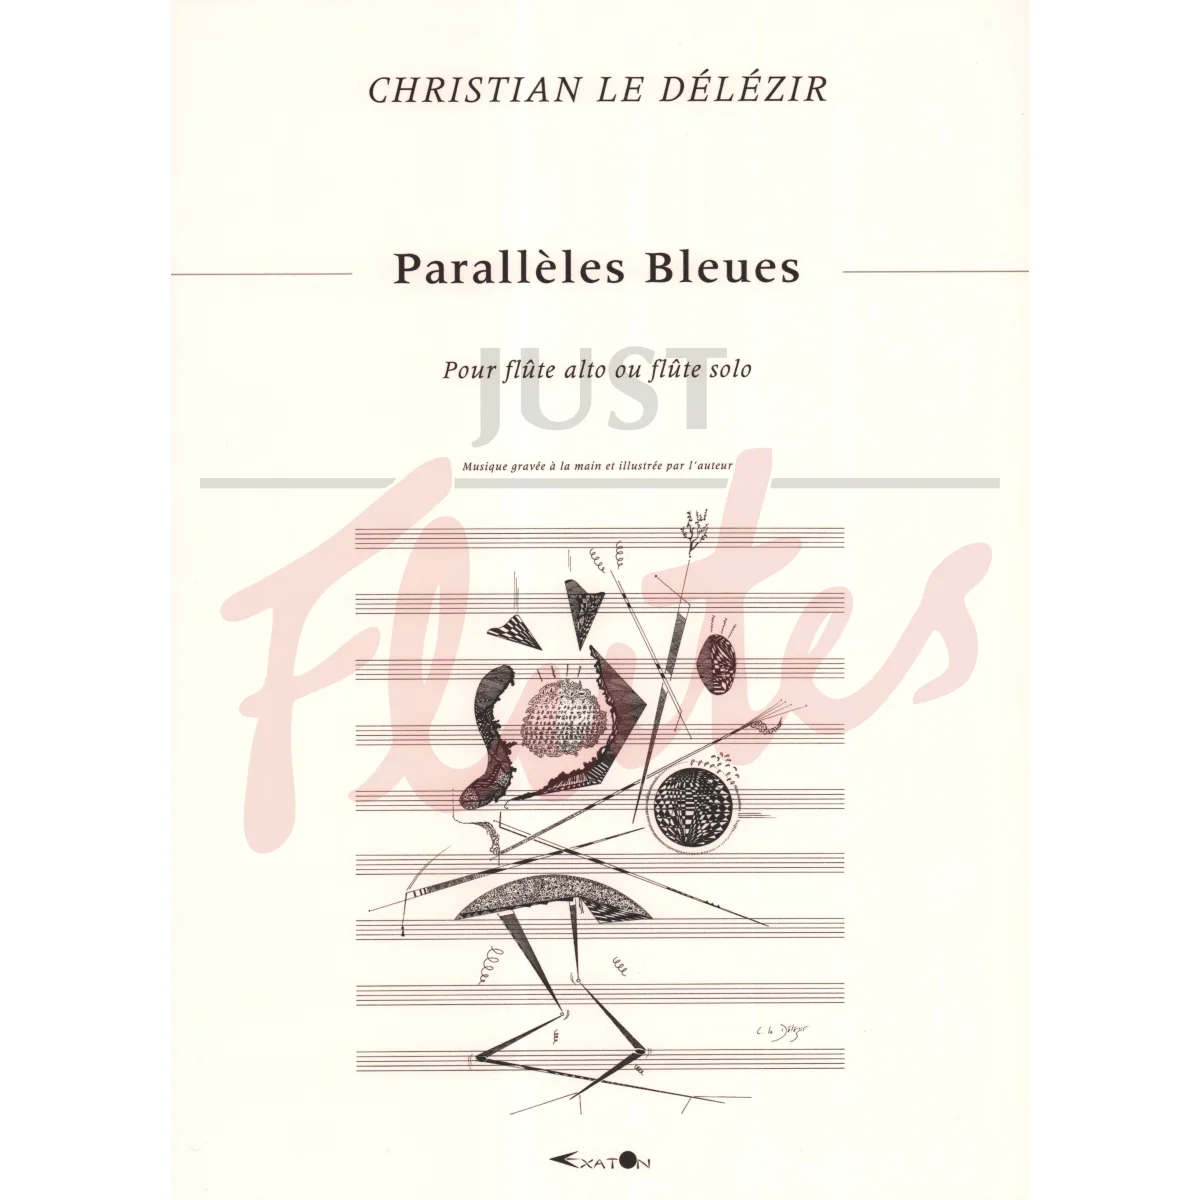 Parallelles Bleues for Alto Flute (or Flute) Solo - Art Edition